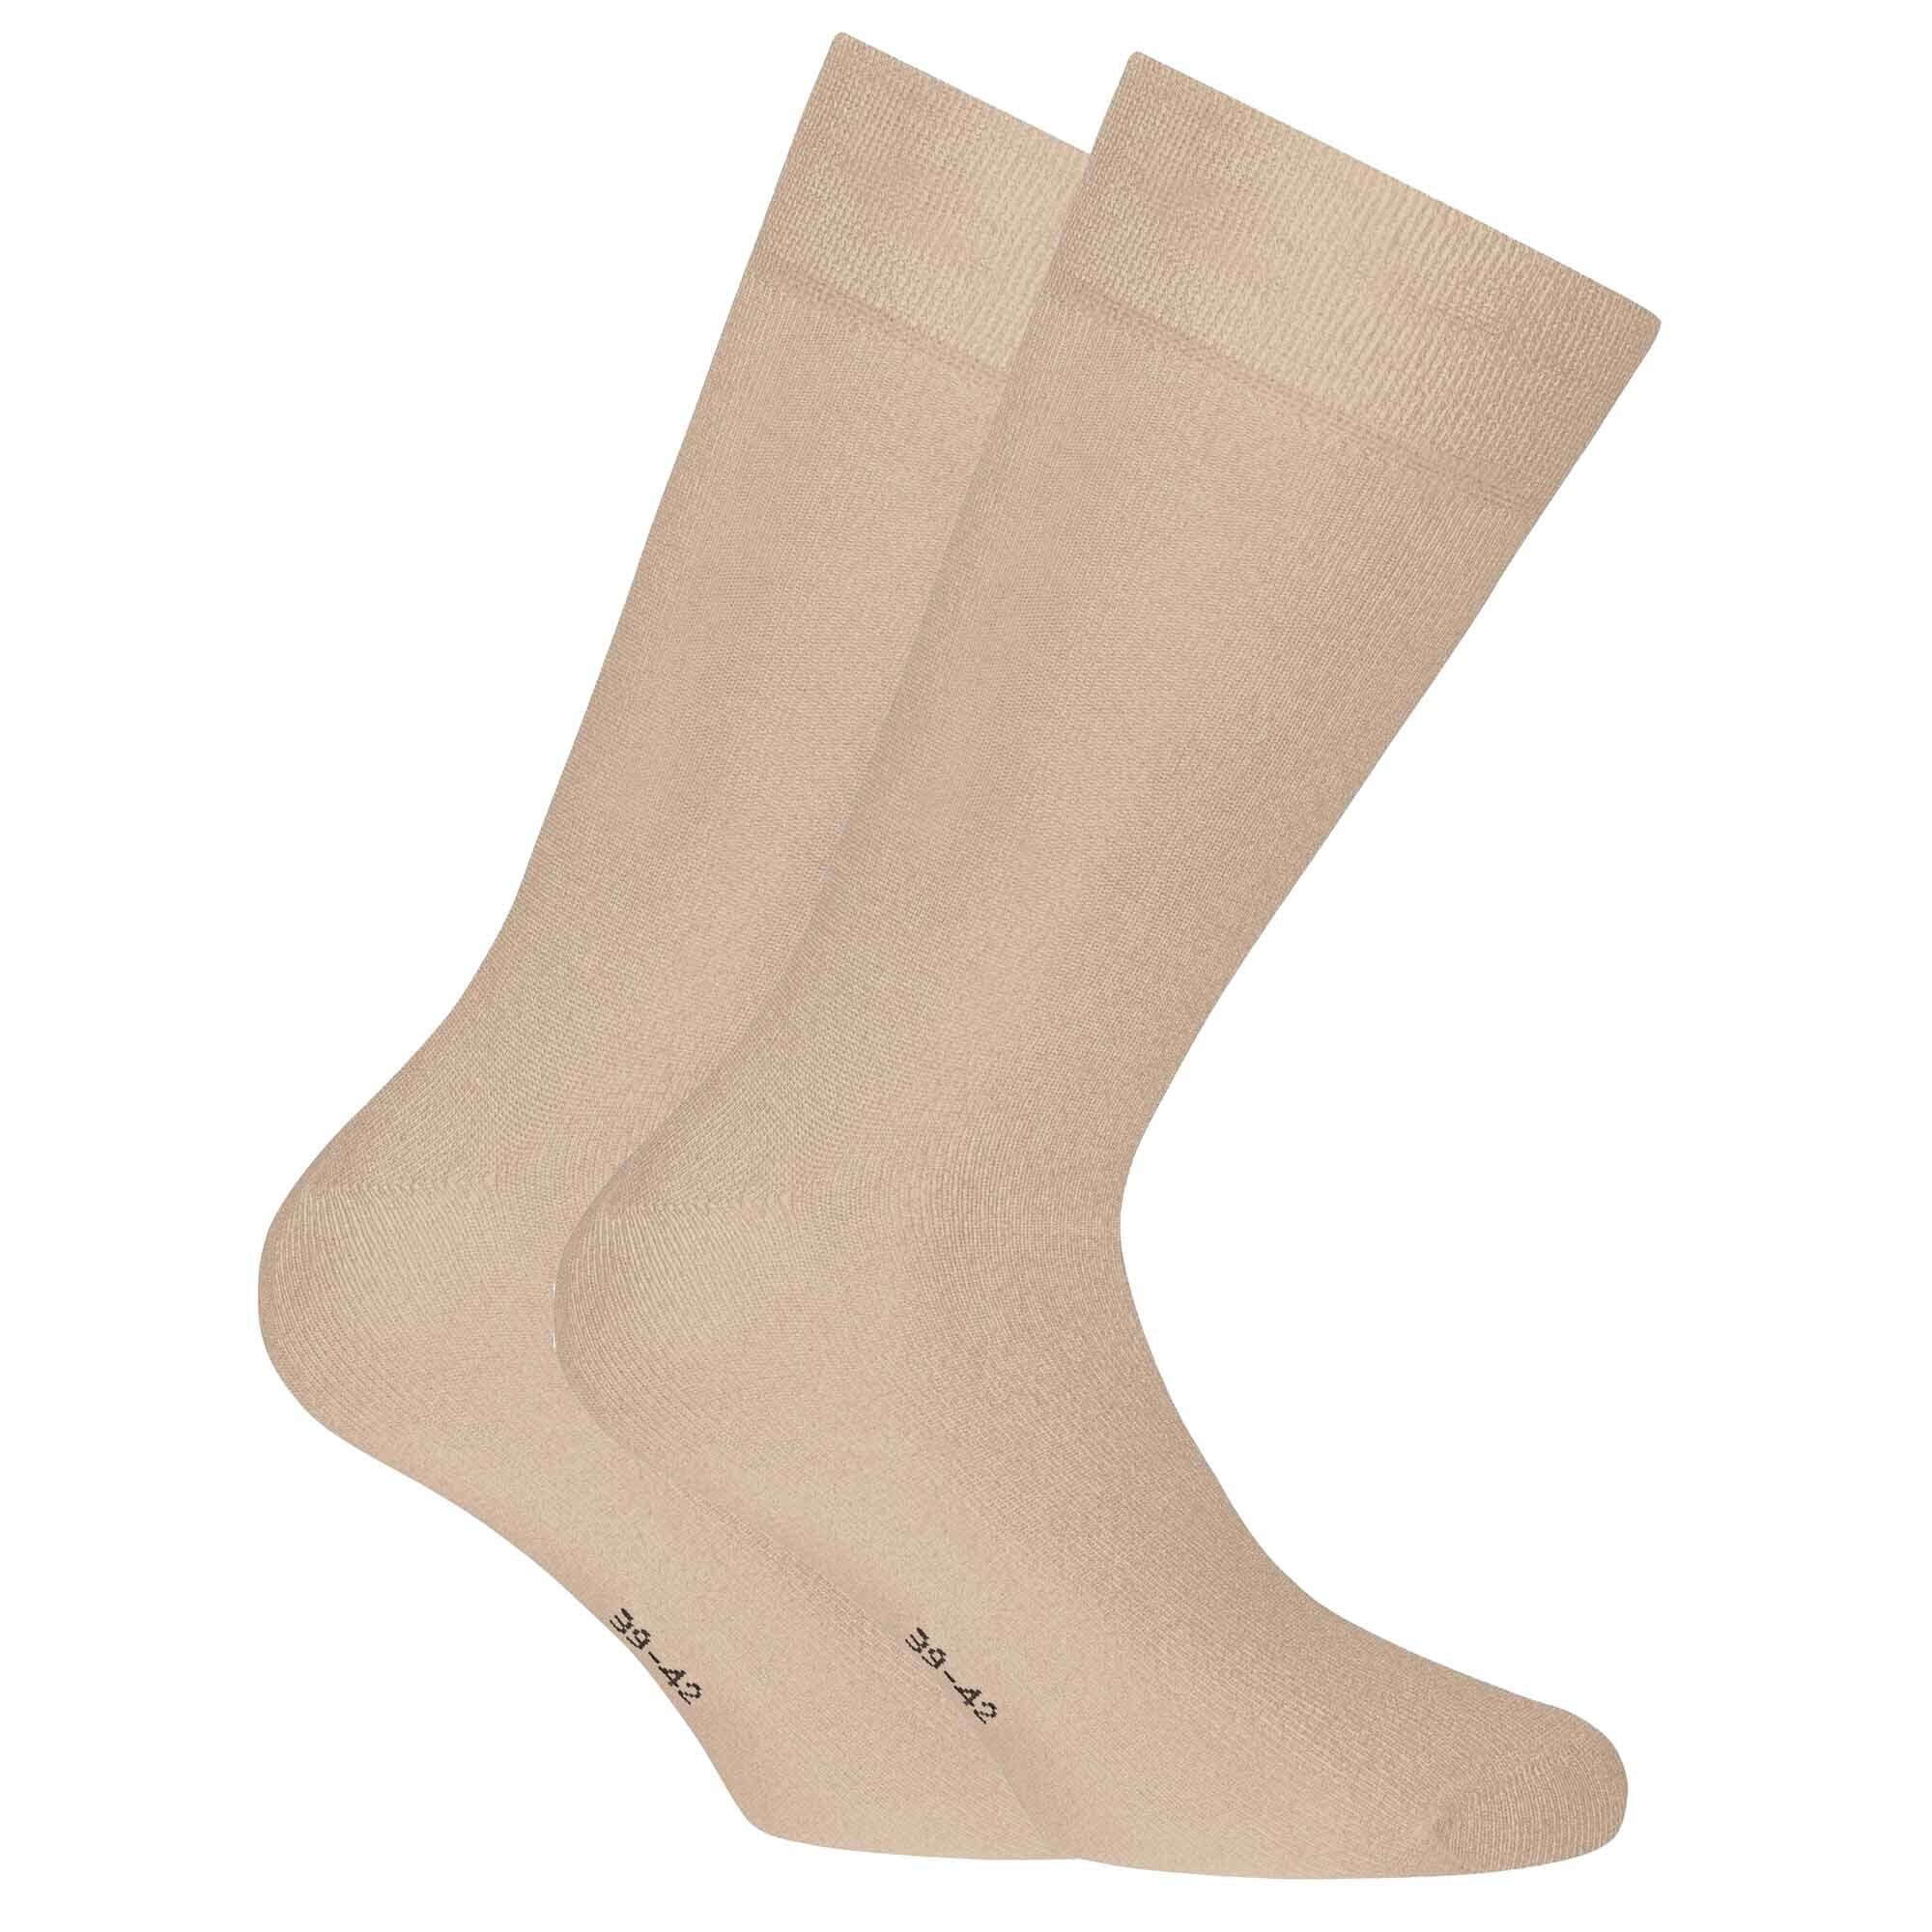 Rohner Socks Kurzsocken Unisex Socken, 2er Pack - Bambus, Kurzsocken Beige | Kurzsocken